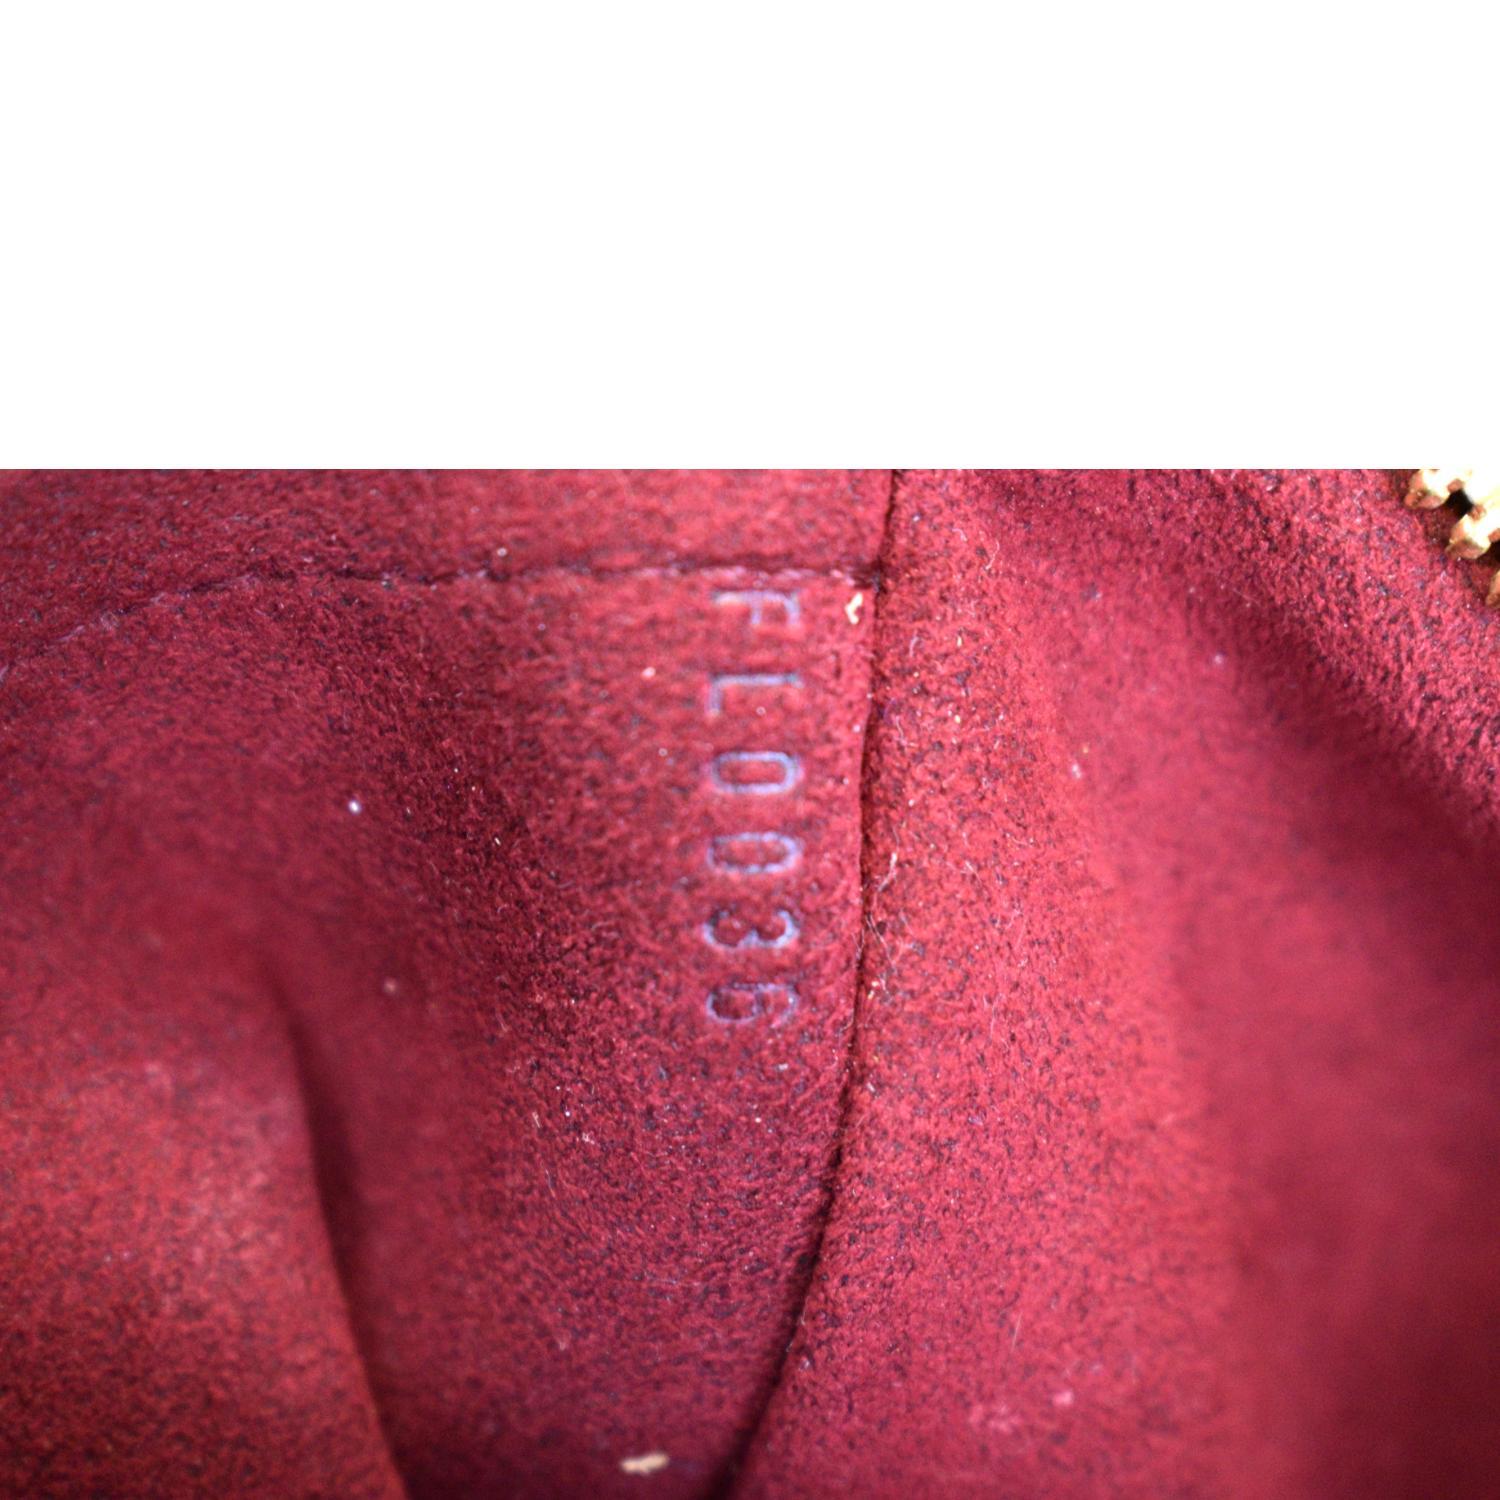 Louis Vuitton Black Multi-Color LODGE PM Shoulder Bag ~ Never